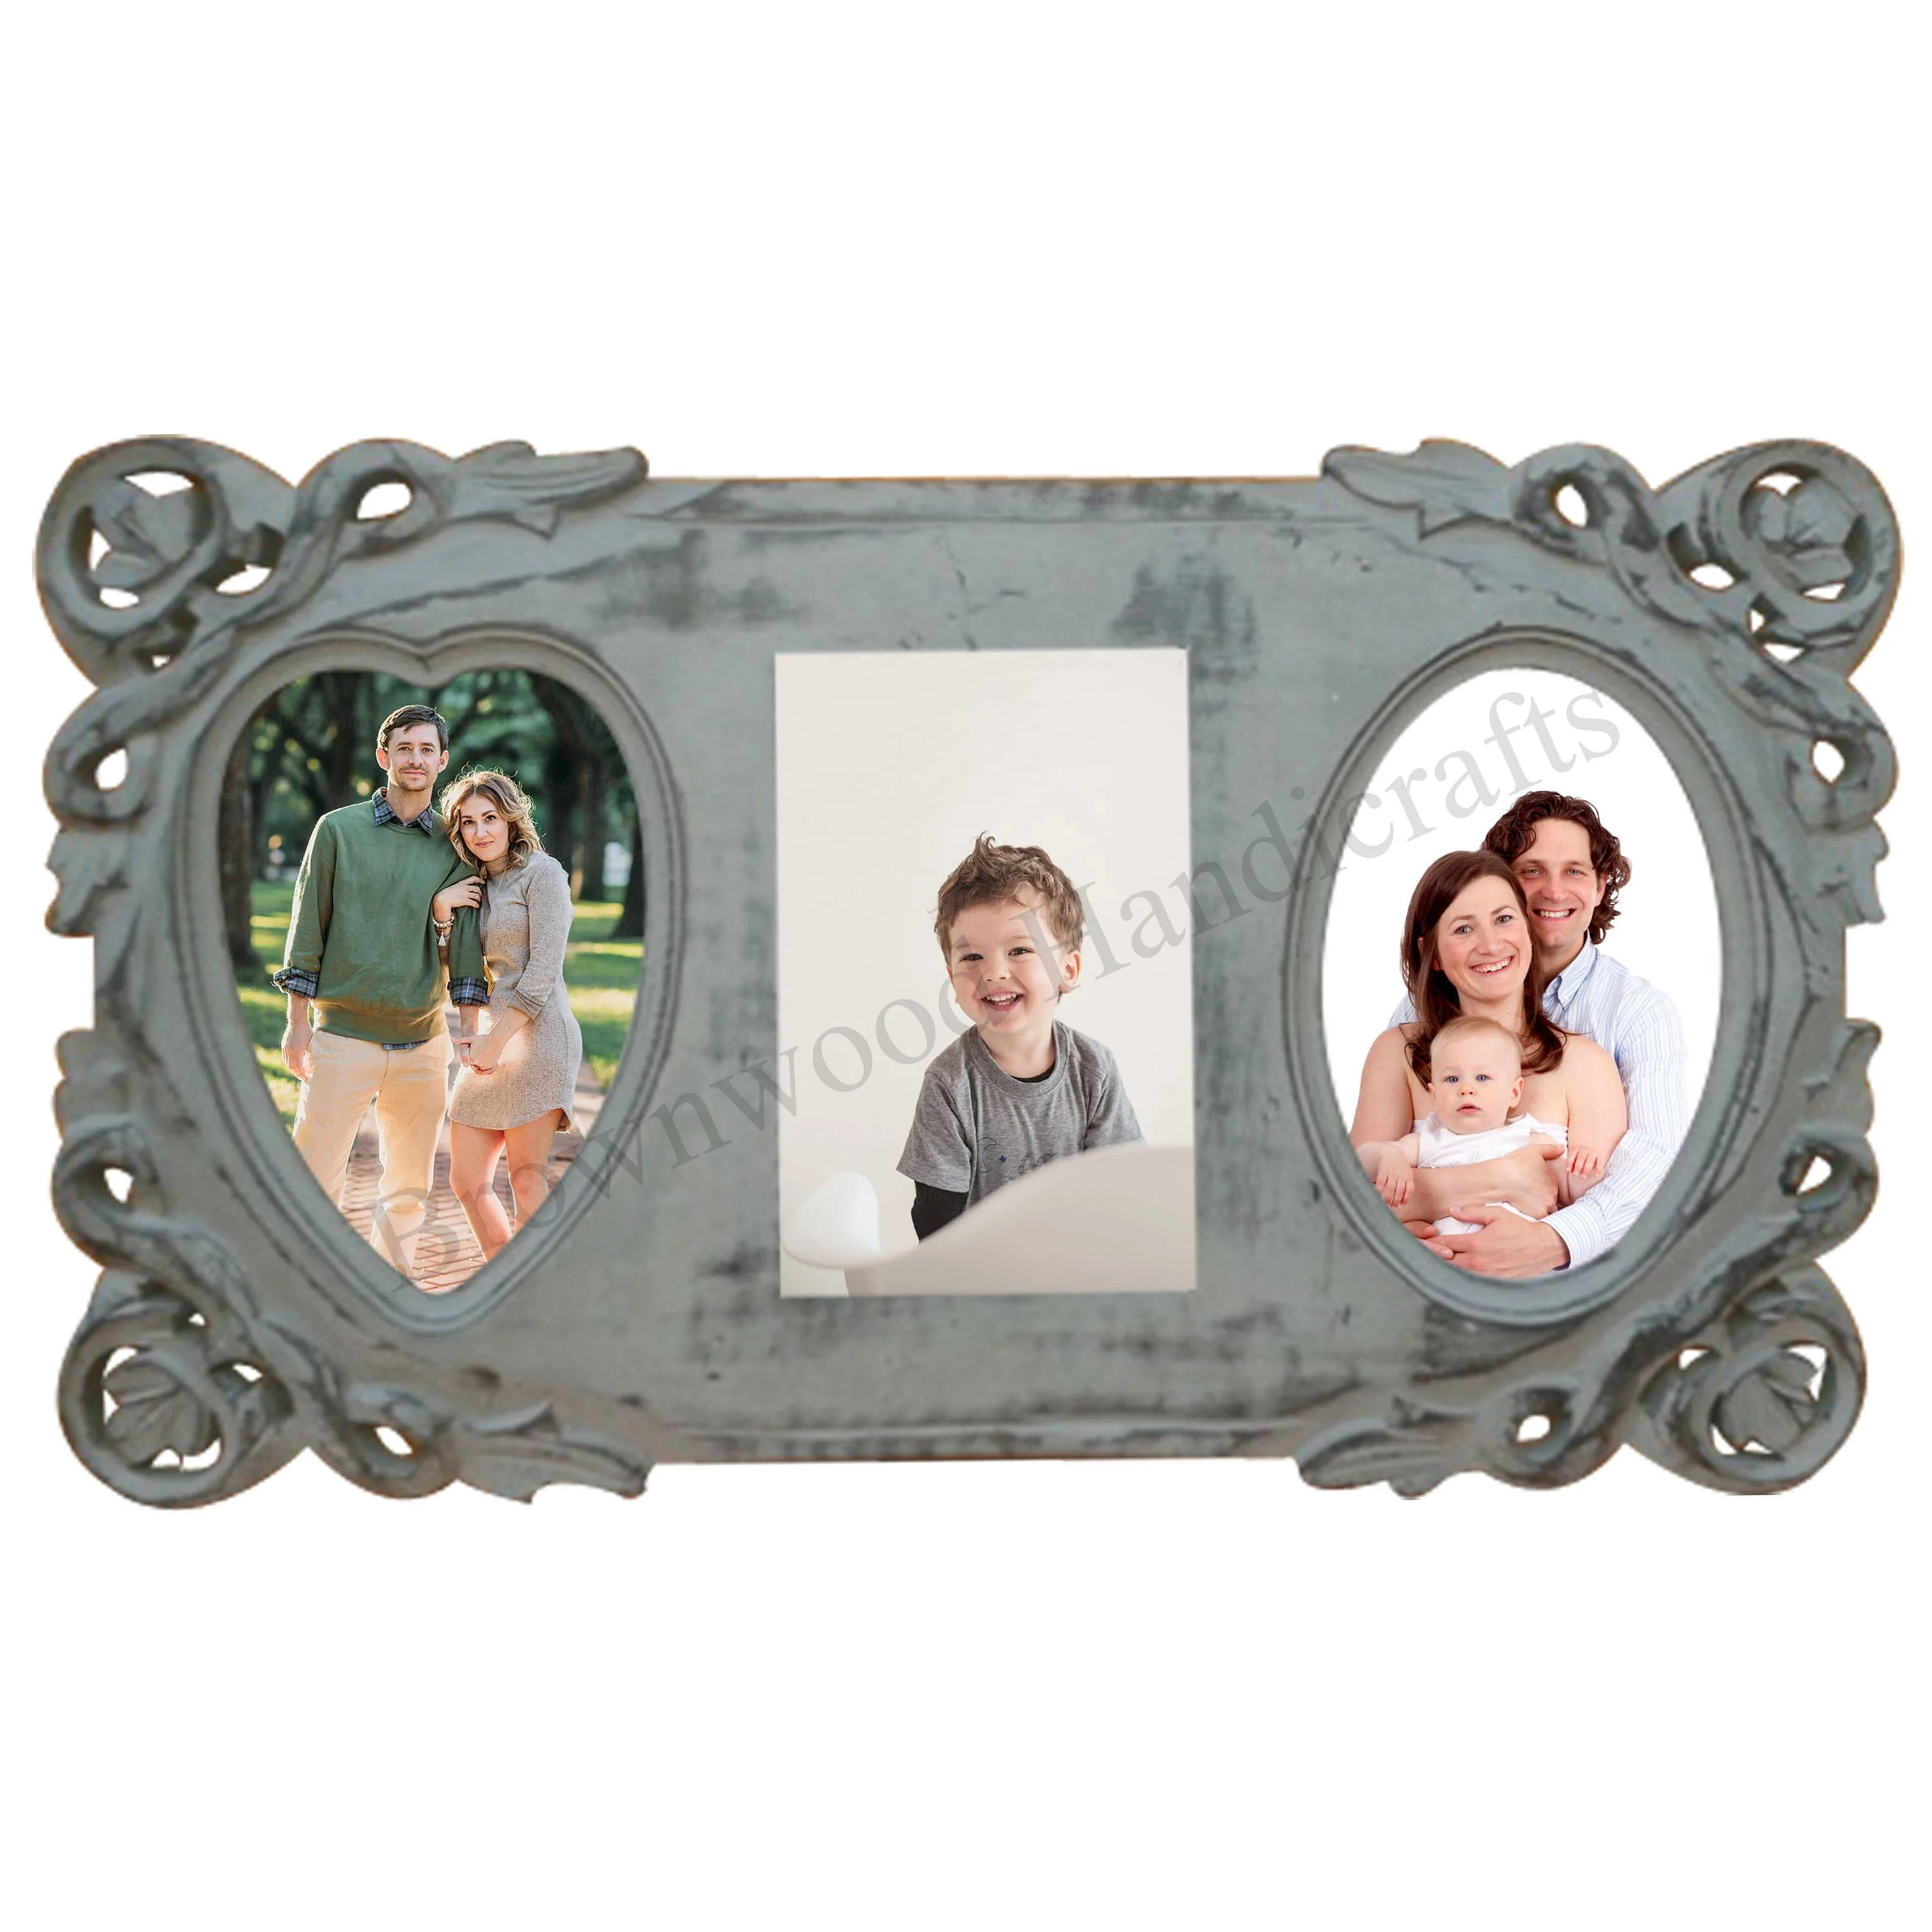 Khung ảnh gia đình: Cùng tạo một không gian tuyệt đẹp với khung ảnh gia đình cho những kỷ niệm đáng nhớ. Chỉ cần một khung ảnh xinh xắn, bạn có thể kết hợp các bức ảnh của gia đình với nhau và tận hưởng được không khí ấm áp, đầm ấm của gia đình mình.